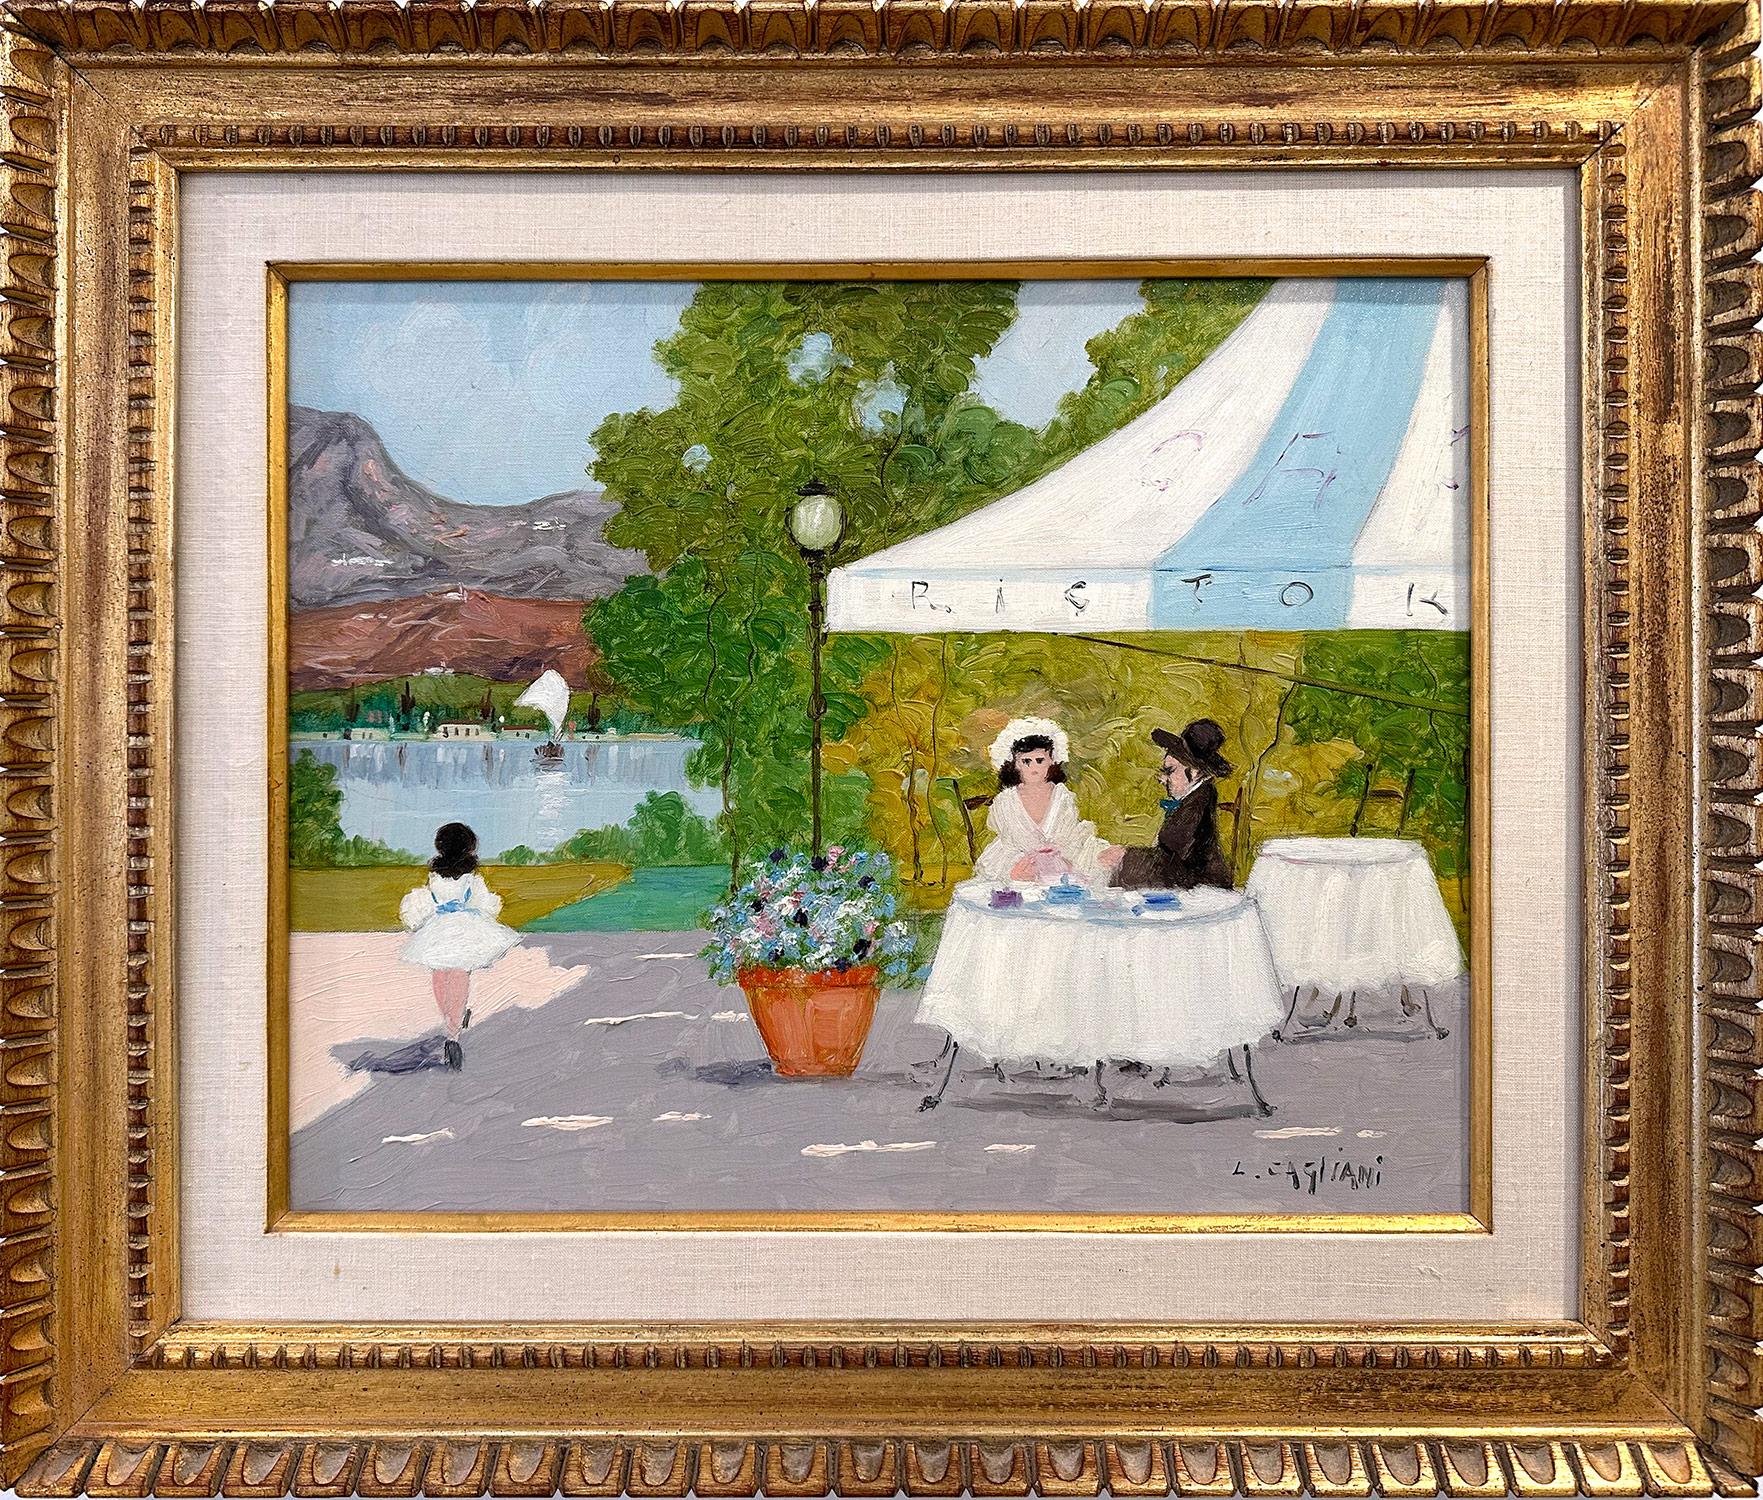 Luigi Cagliani Landscape Painting – "Cafe mit Blick auf den Luganer See" Impressionistisches Öl auf Leinwand Gemälde